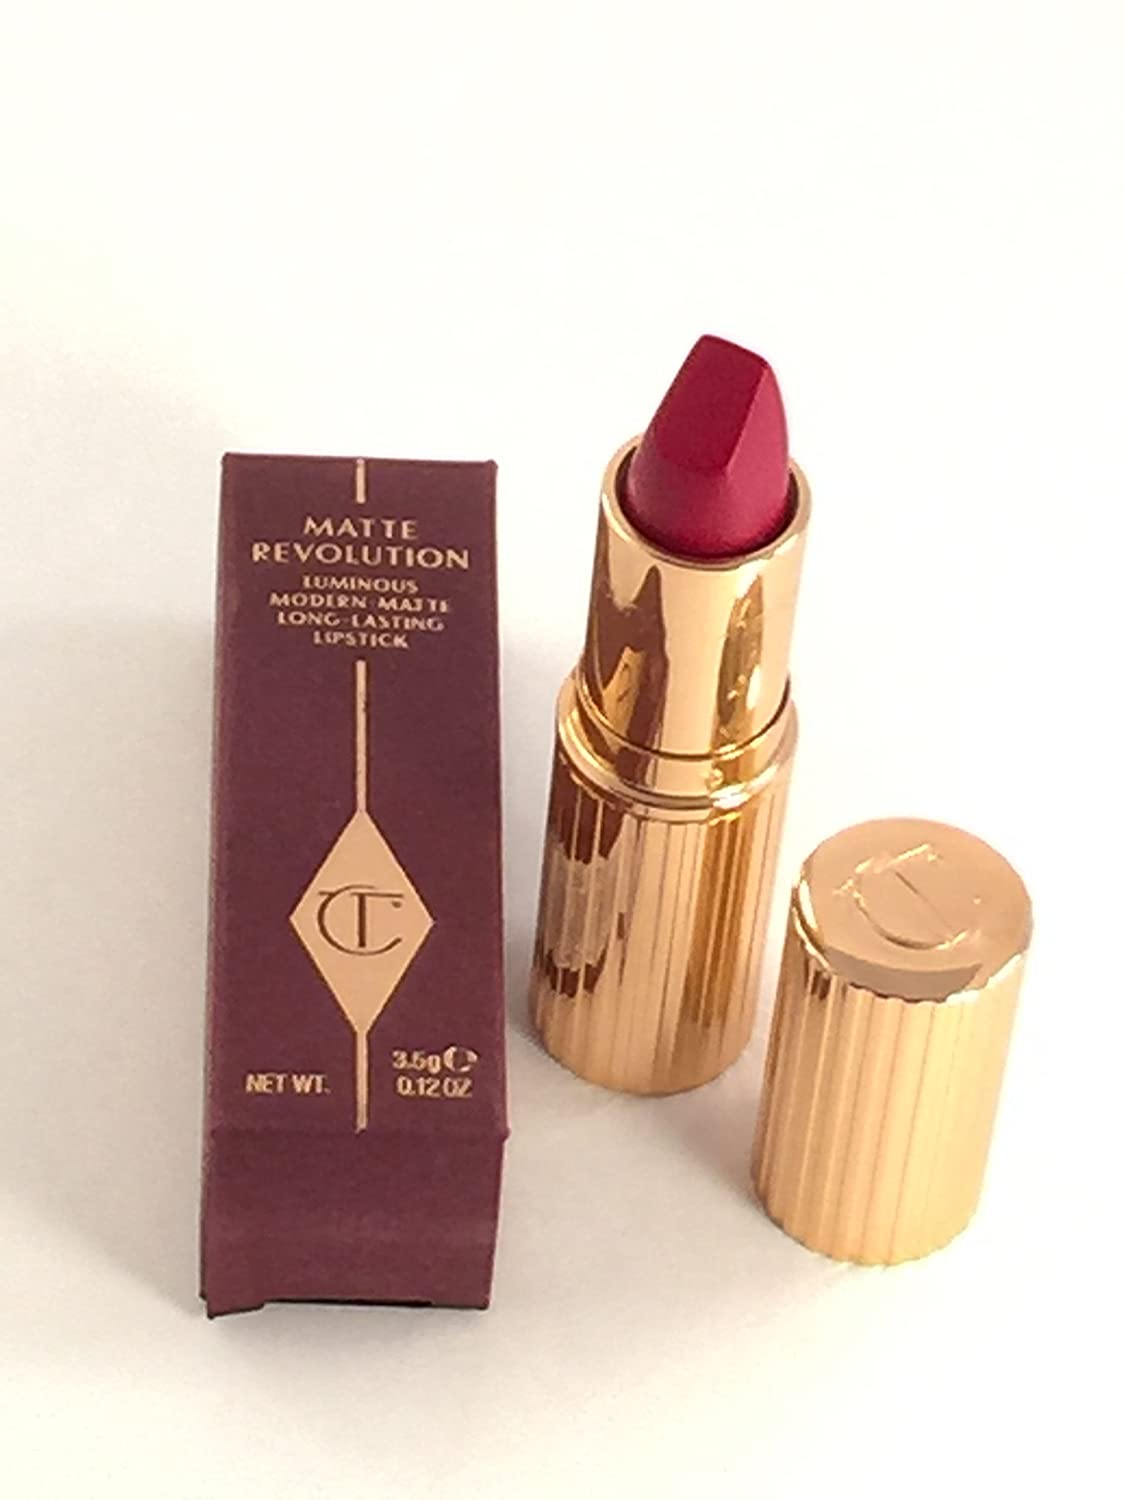 Charlotte Tilbury Matte Revolution Long Lasting Lipstick Red Carpet Red 3.5g